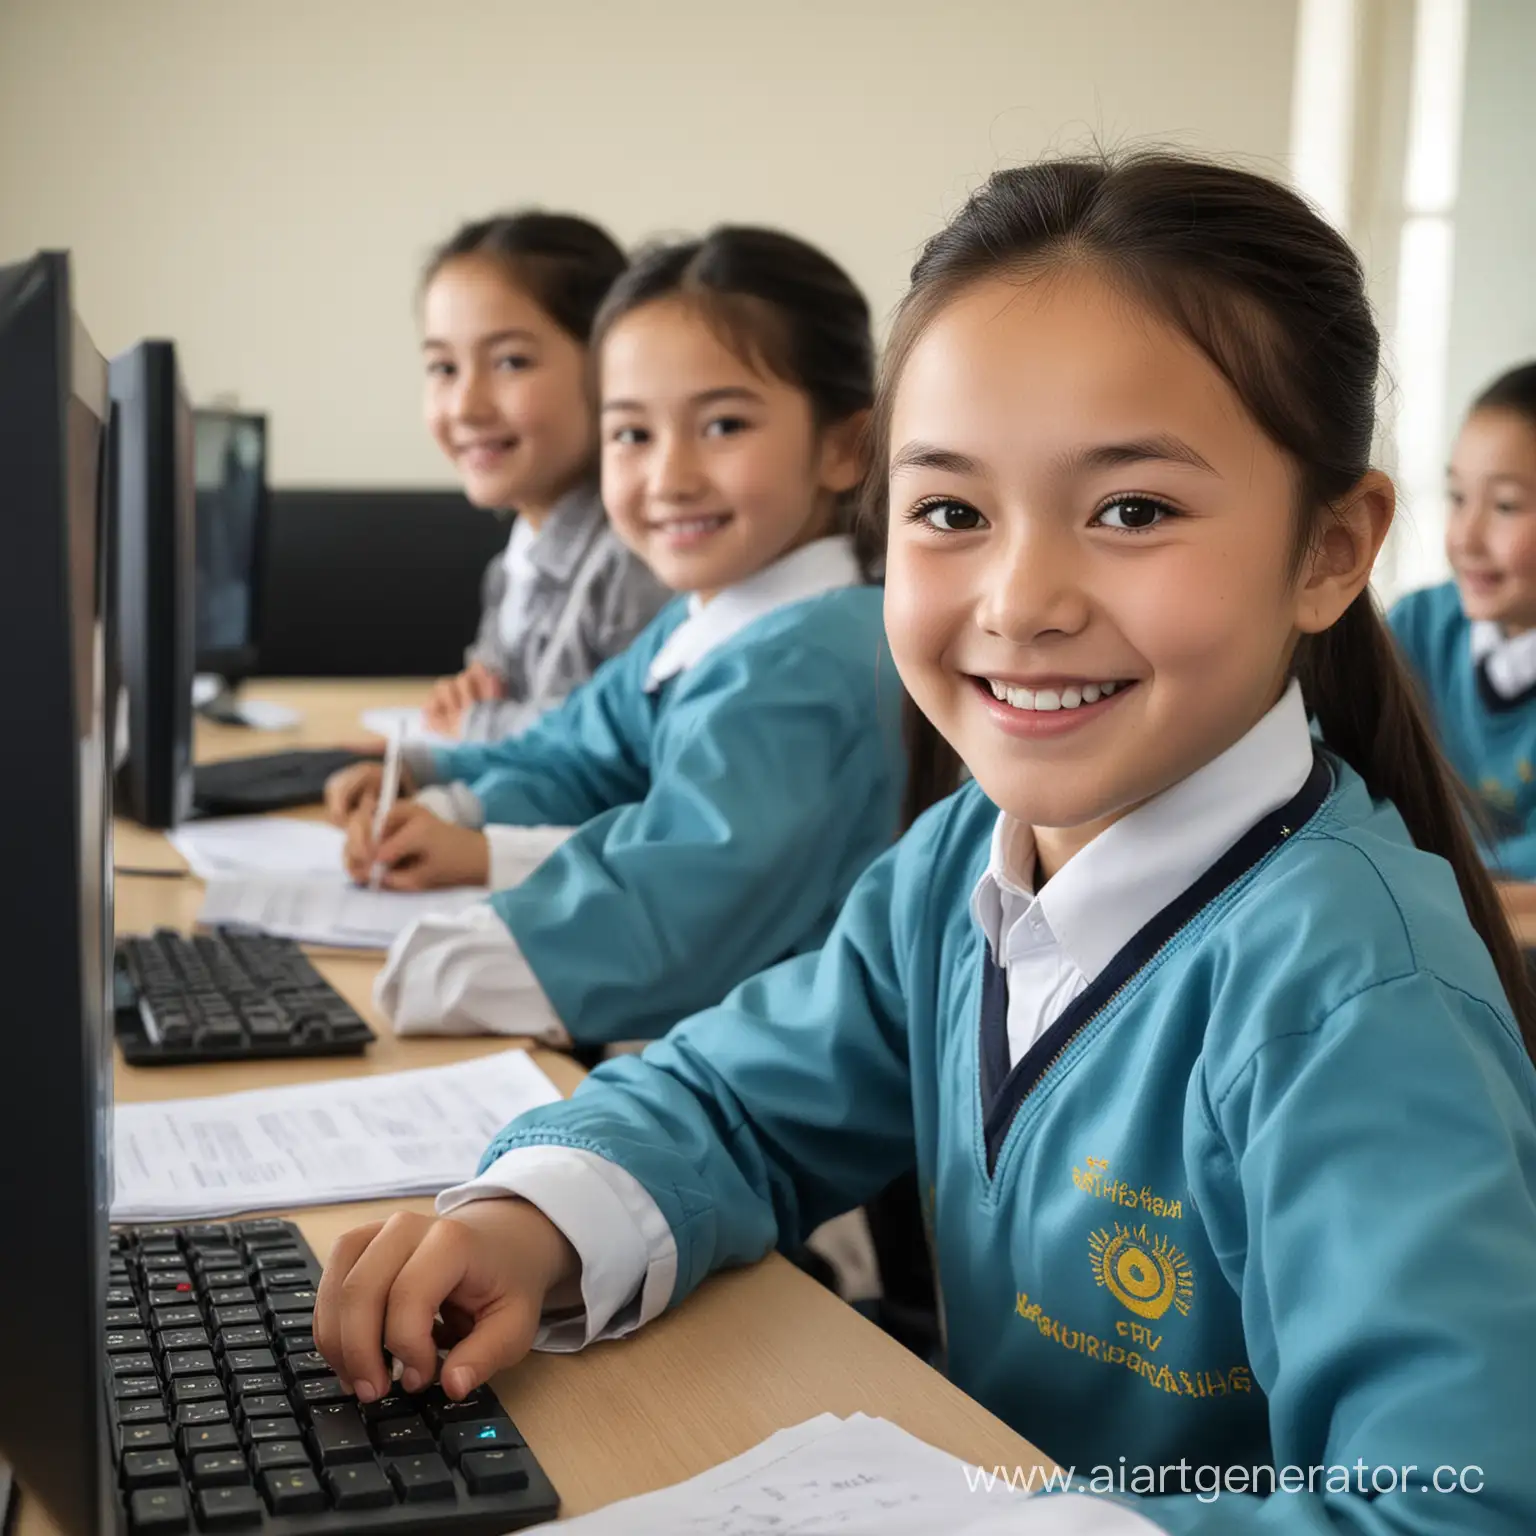 казахские дети занимаются на уроке, улыбаются, рядом стоят компьютеры 